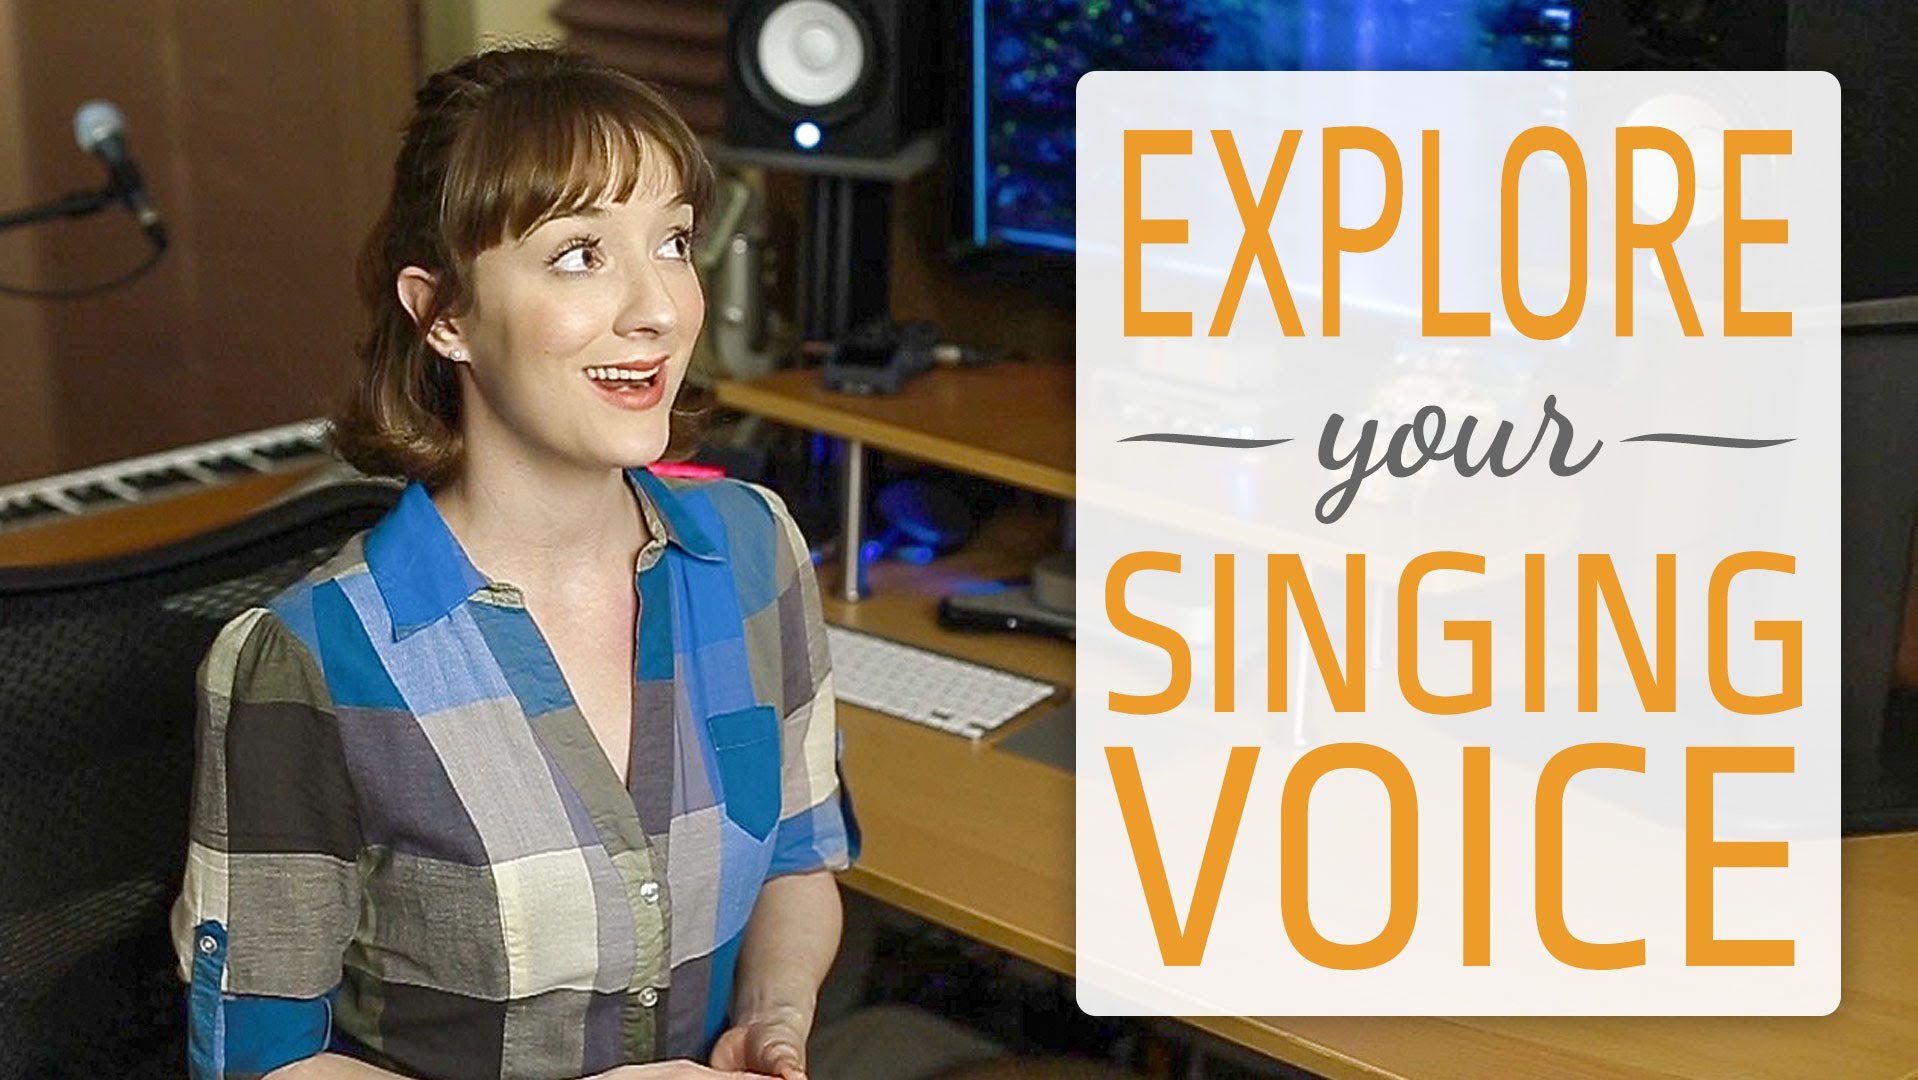 More information about "Explore your unique singing voice"